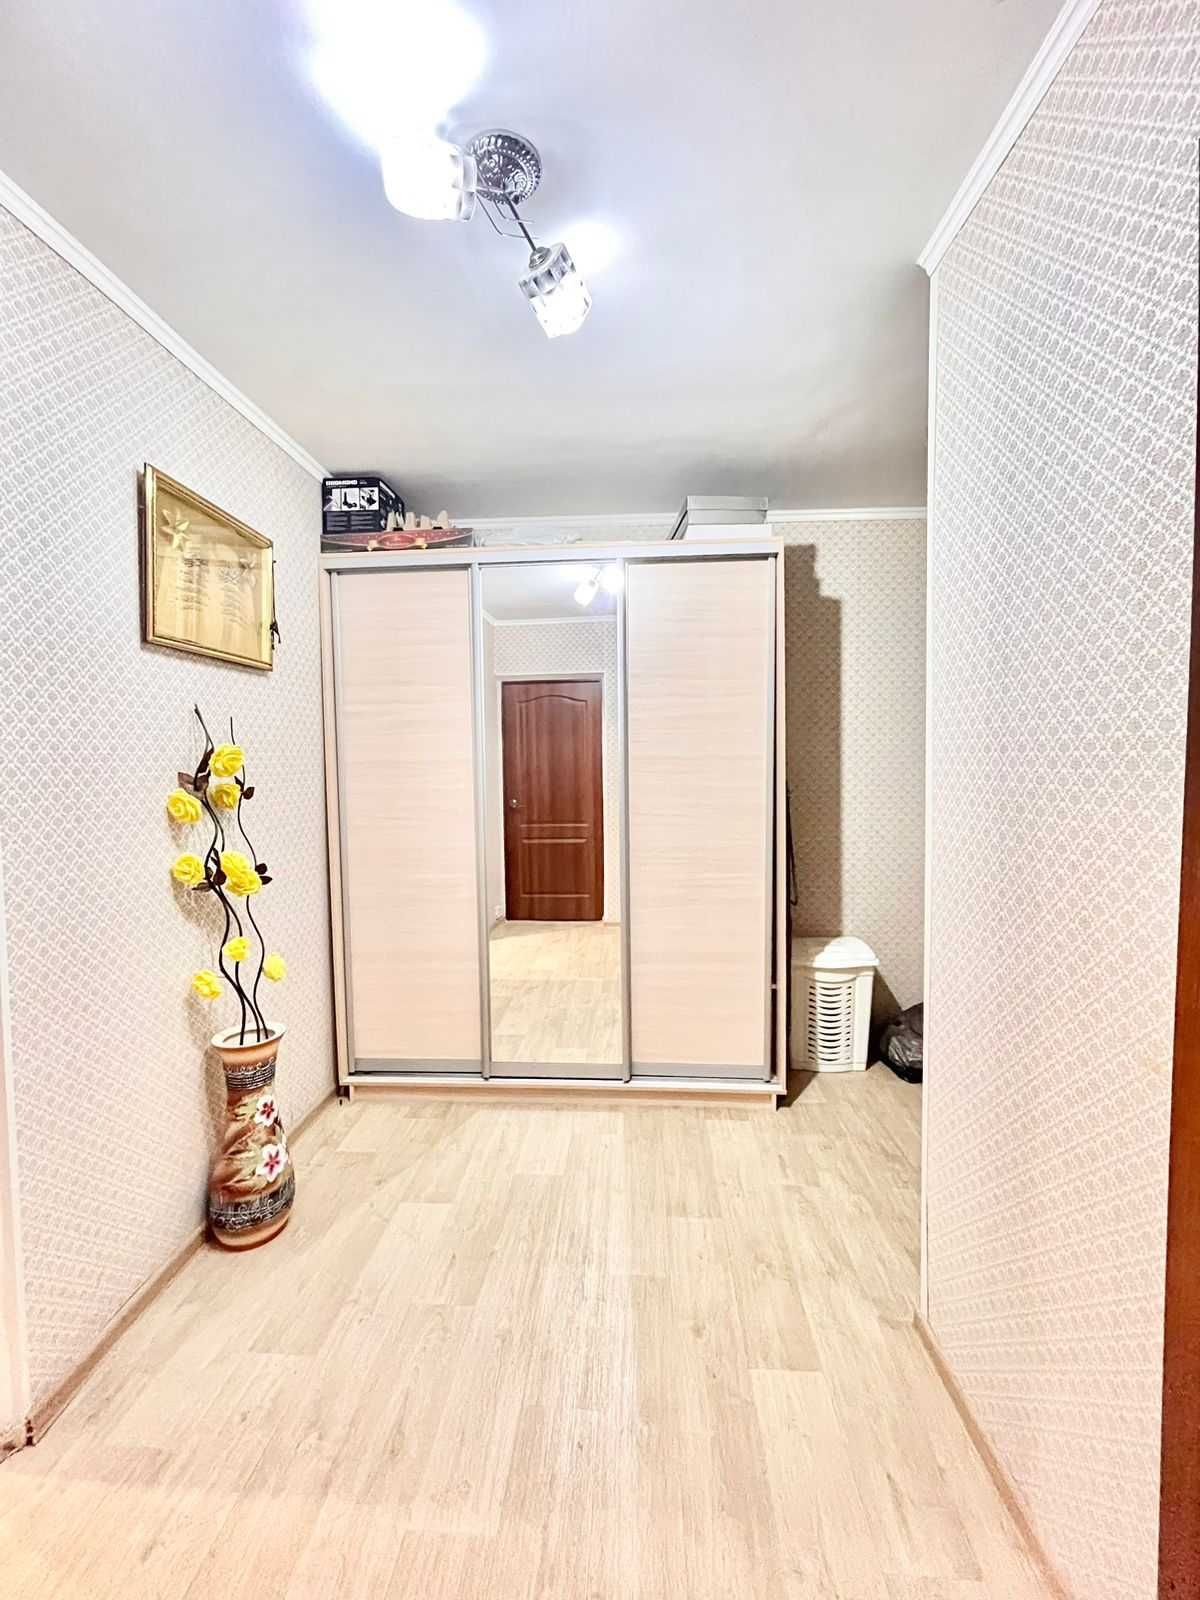 Продается 2-х комнатная квартира район Петровского